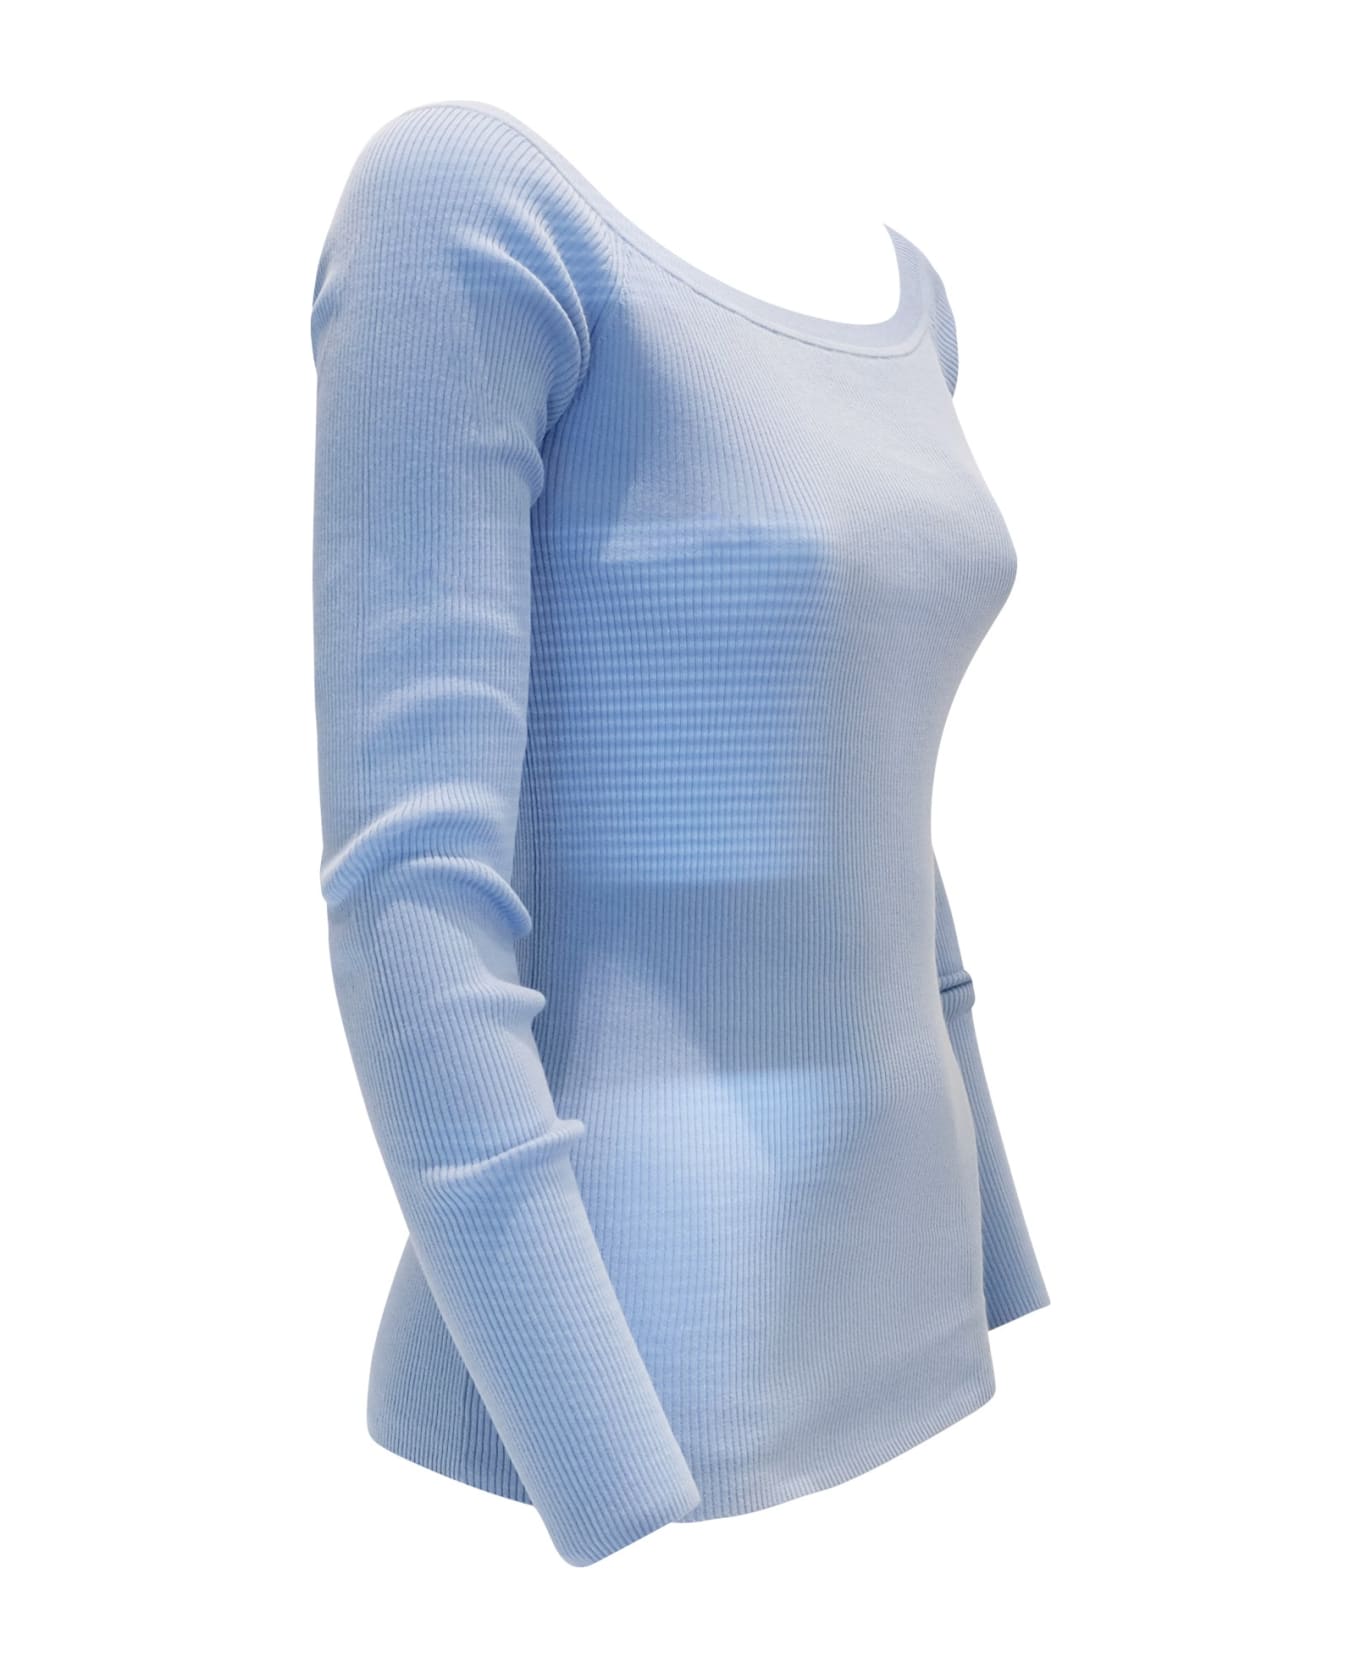 Parosh Powder Blue Cotton Cipria24 Sweater - Azzurro ニットウェア